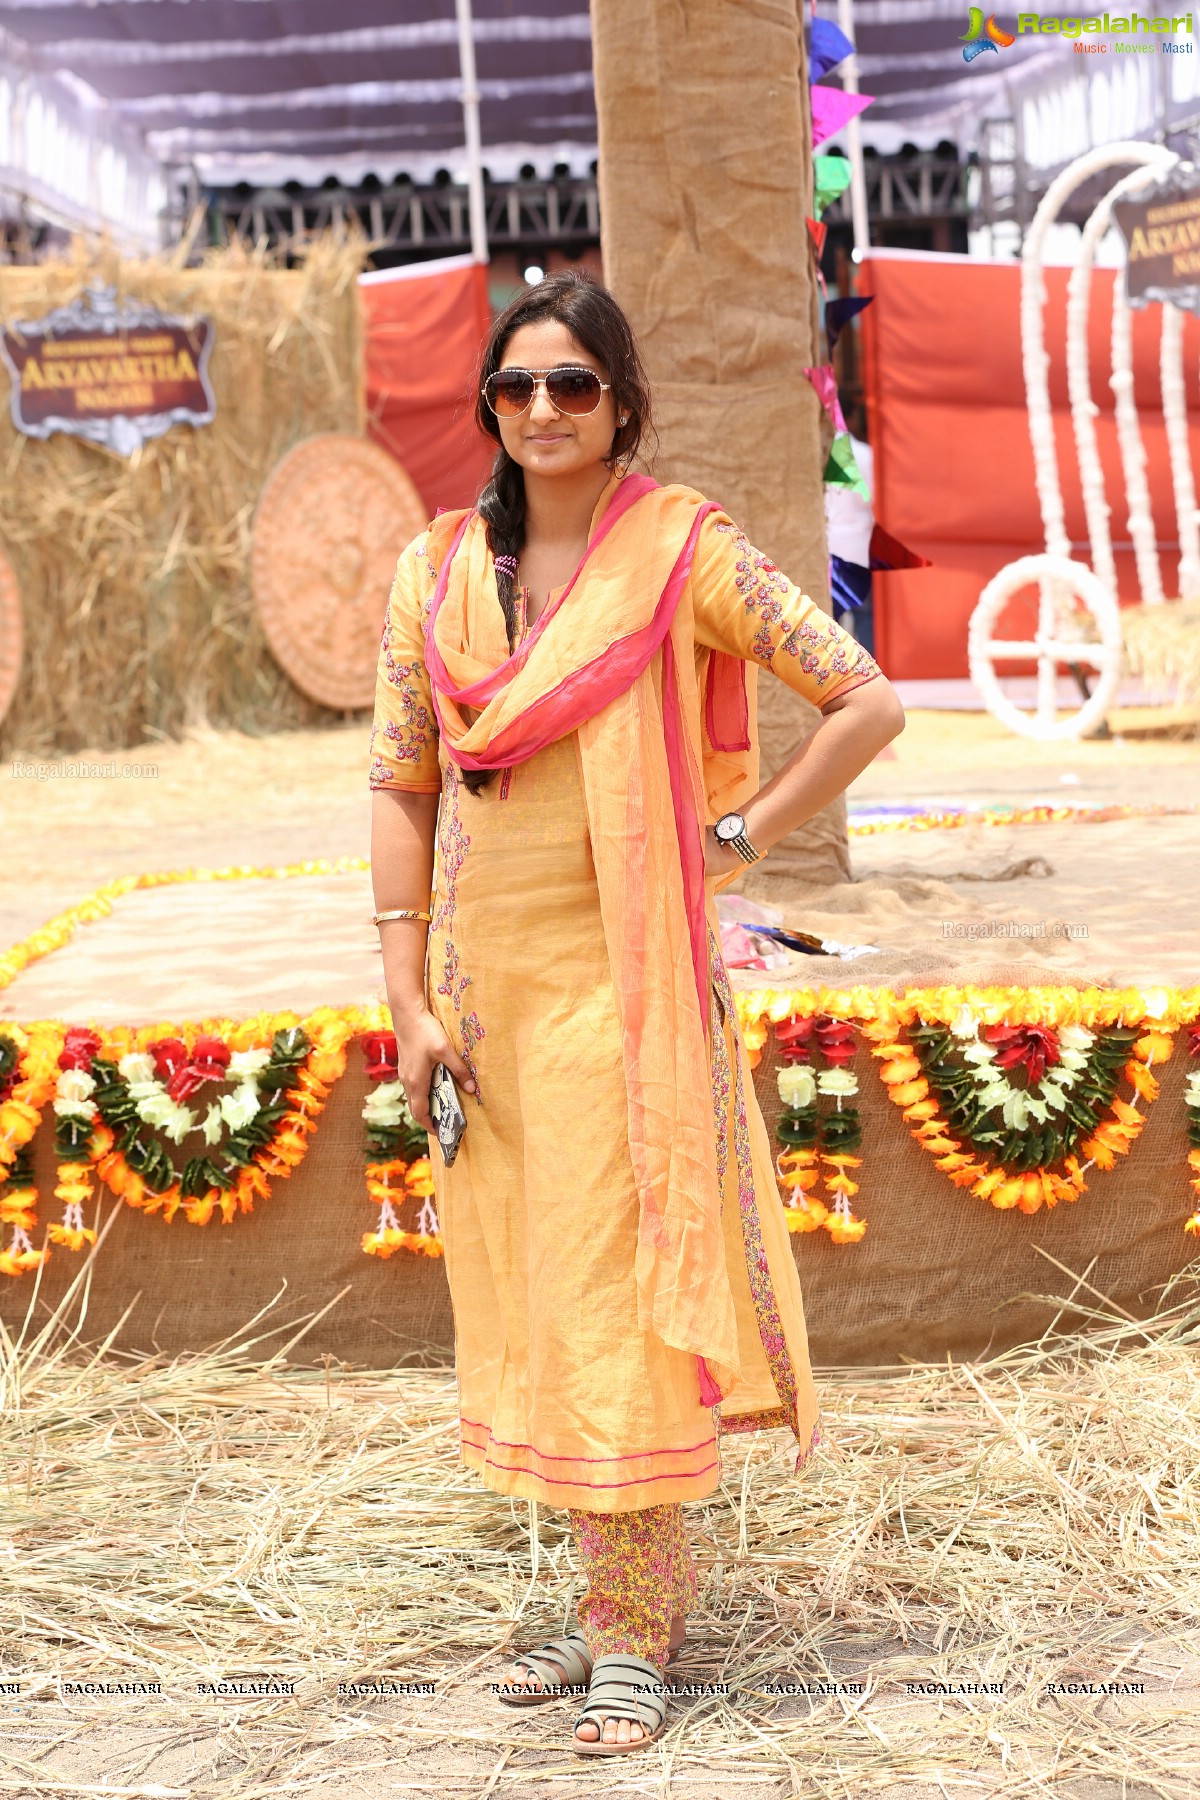 Zarine Khan launches Suchirindia's Aryavartha Nagari Project